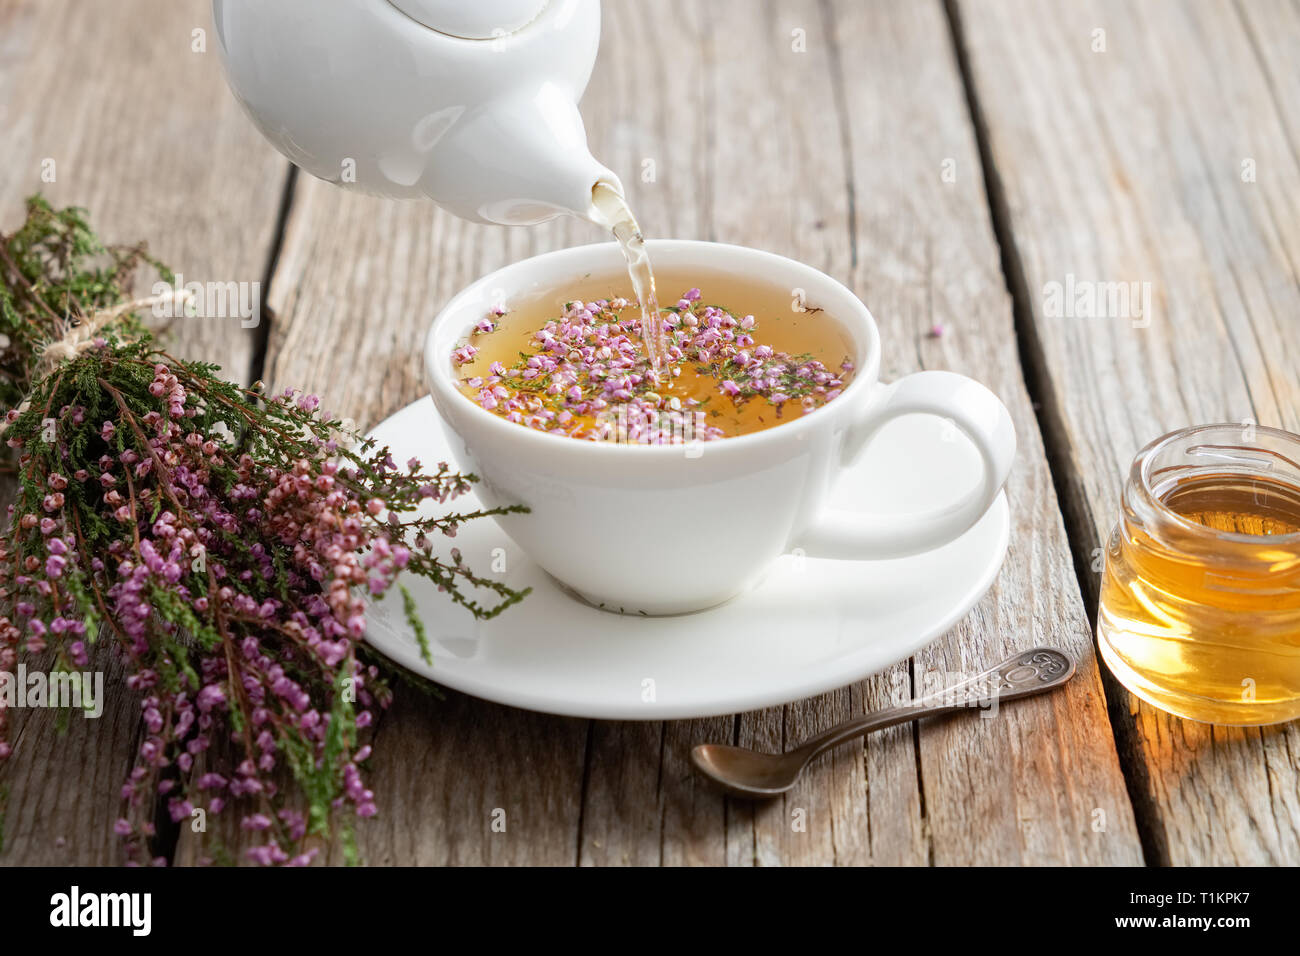 Gesunde heather Kaffee gegossen in weiße Schale. Teekanne, klein Honigtopf und Heather Bündel. Stockfoto